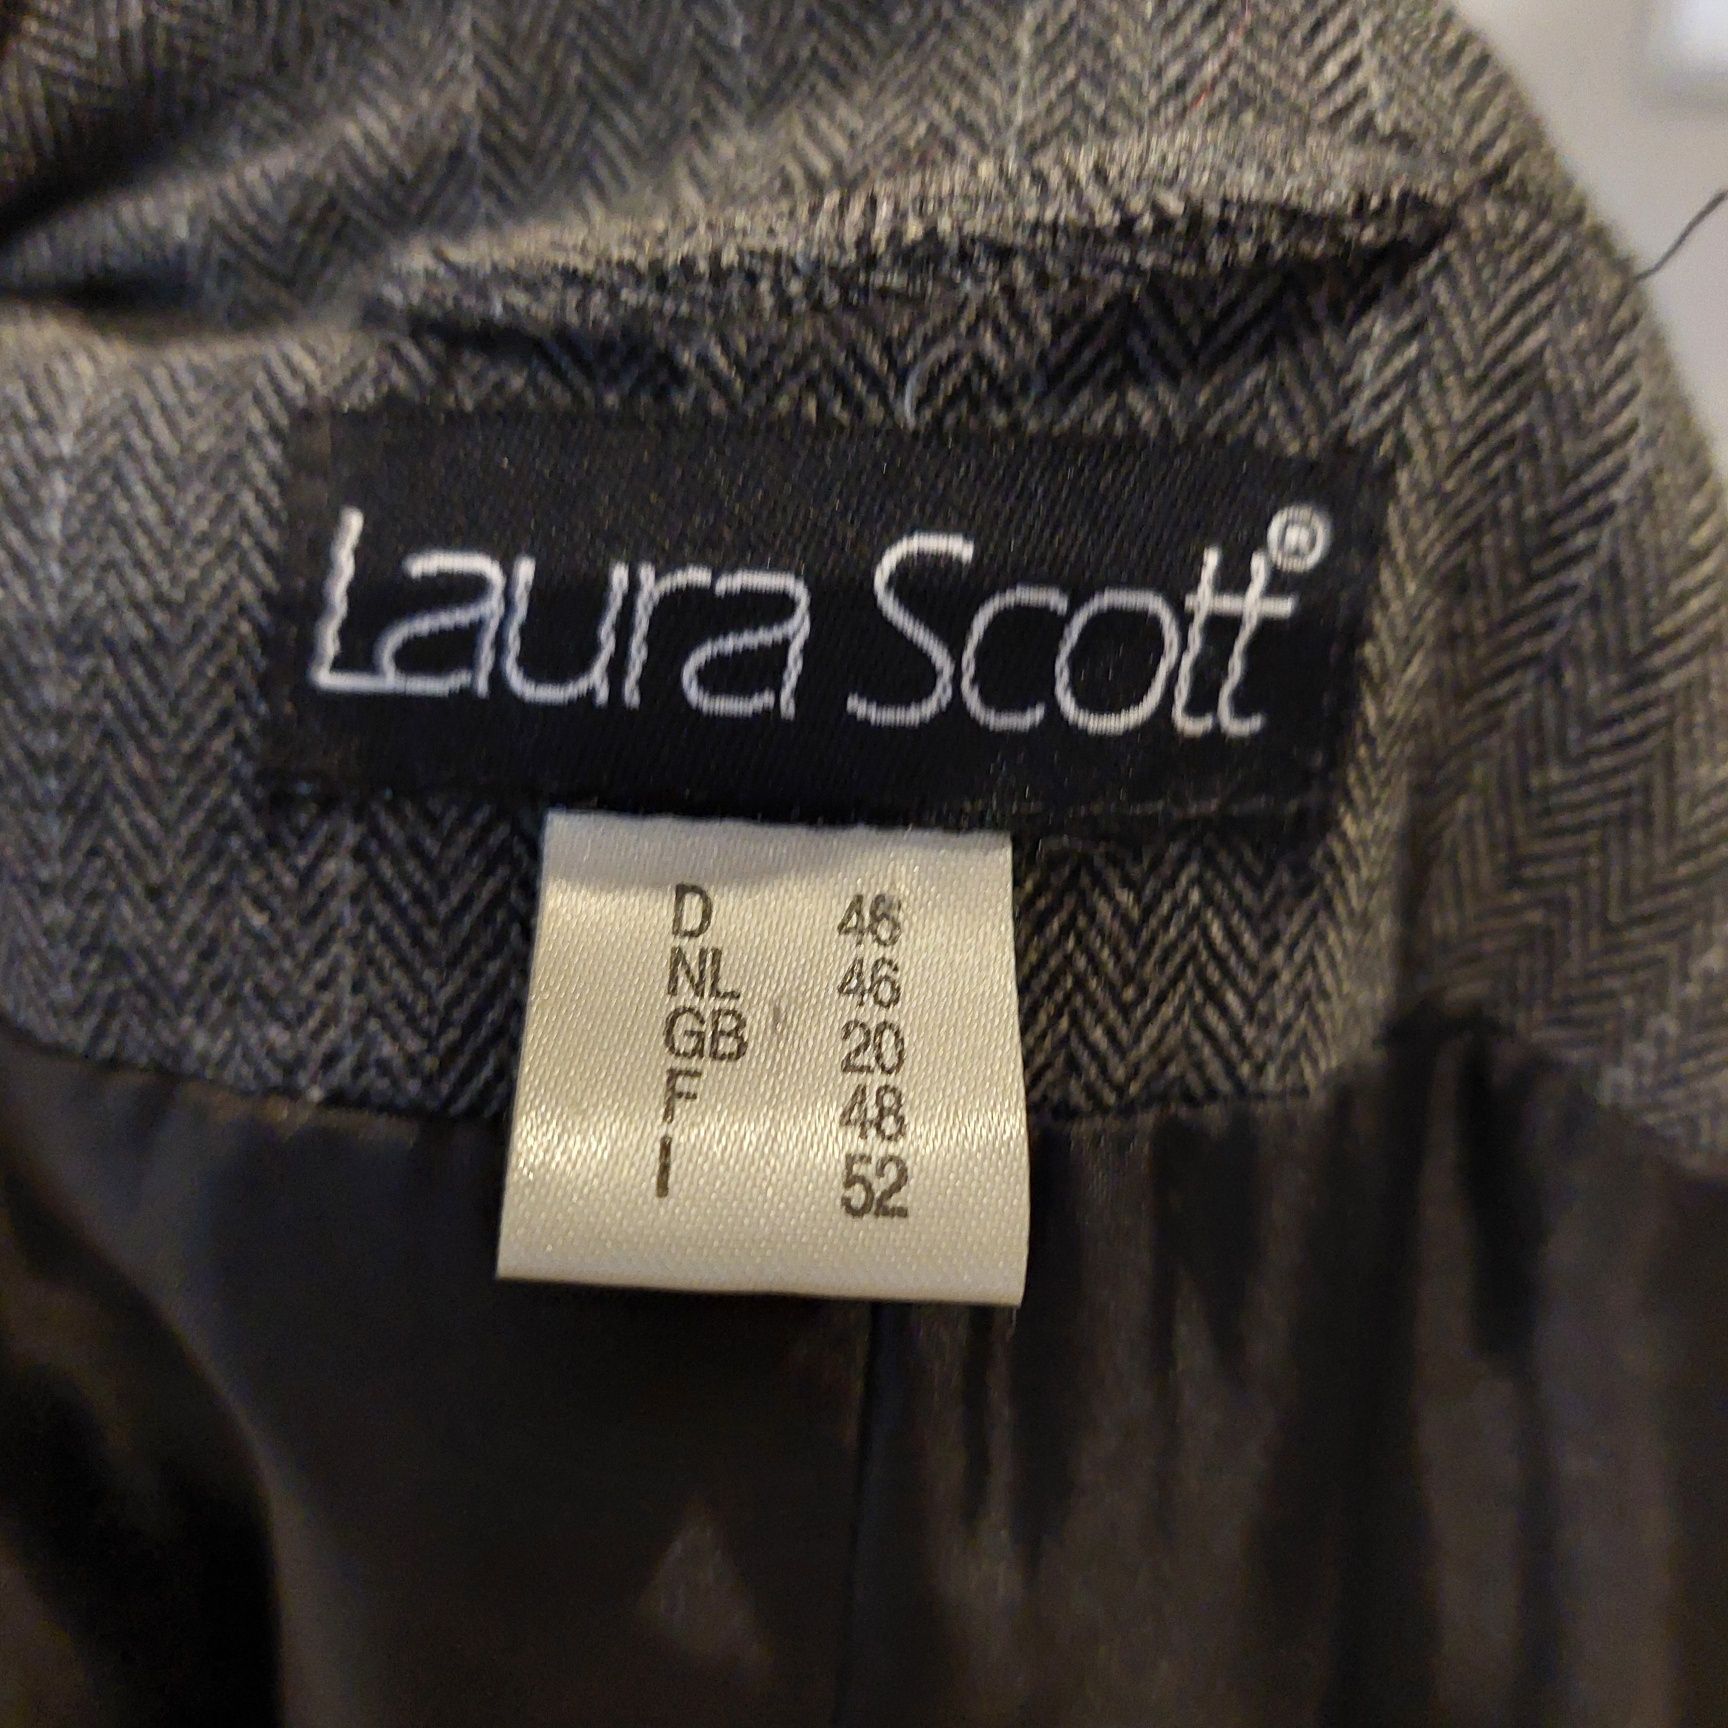 Marynarka żakiet firmy Laura Scott w rozmiarze XXXL